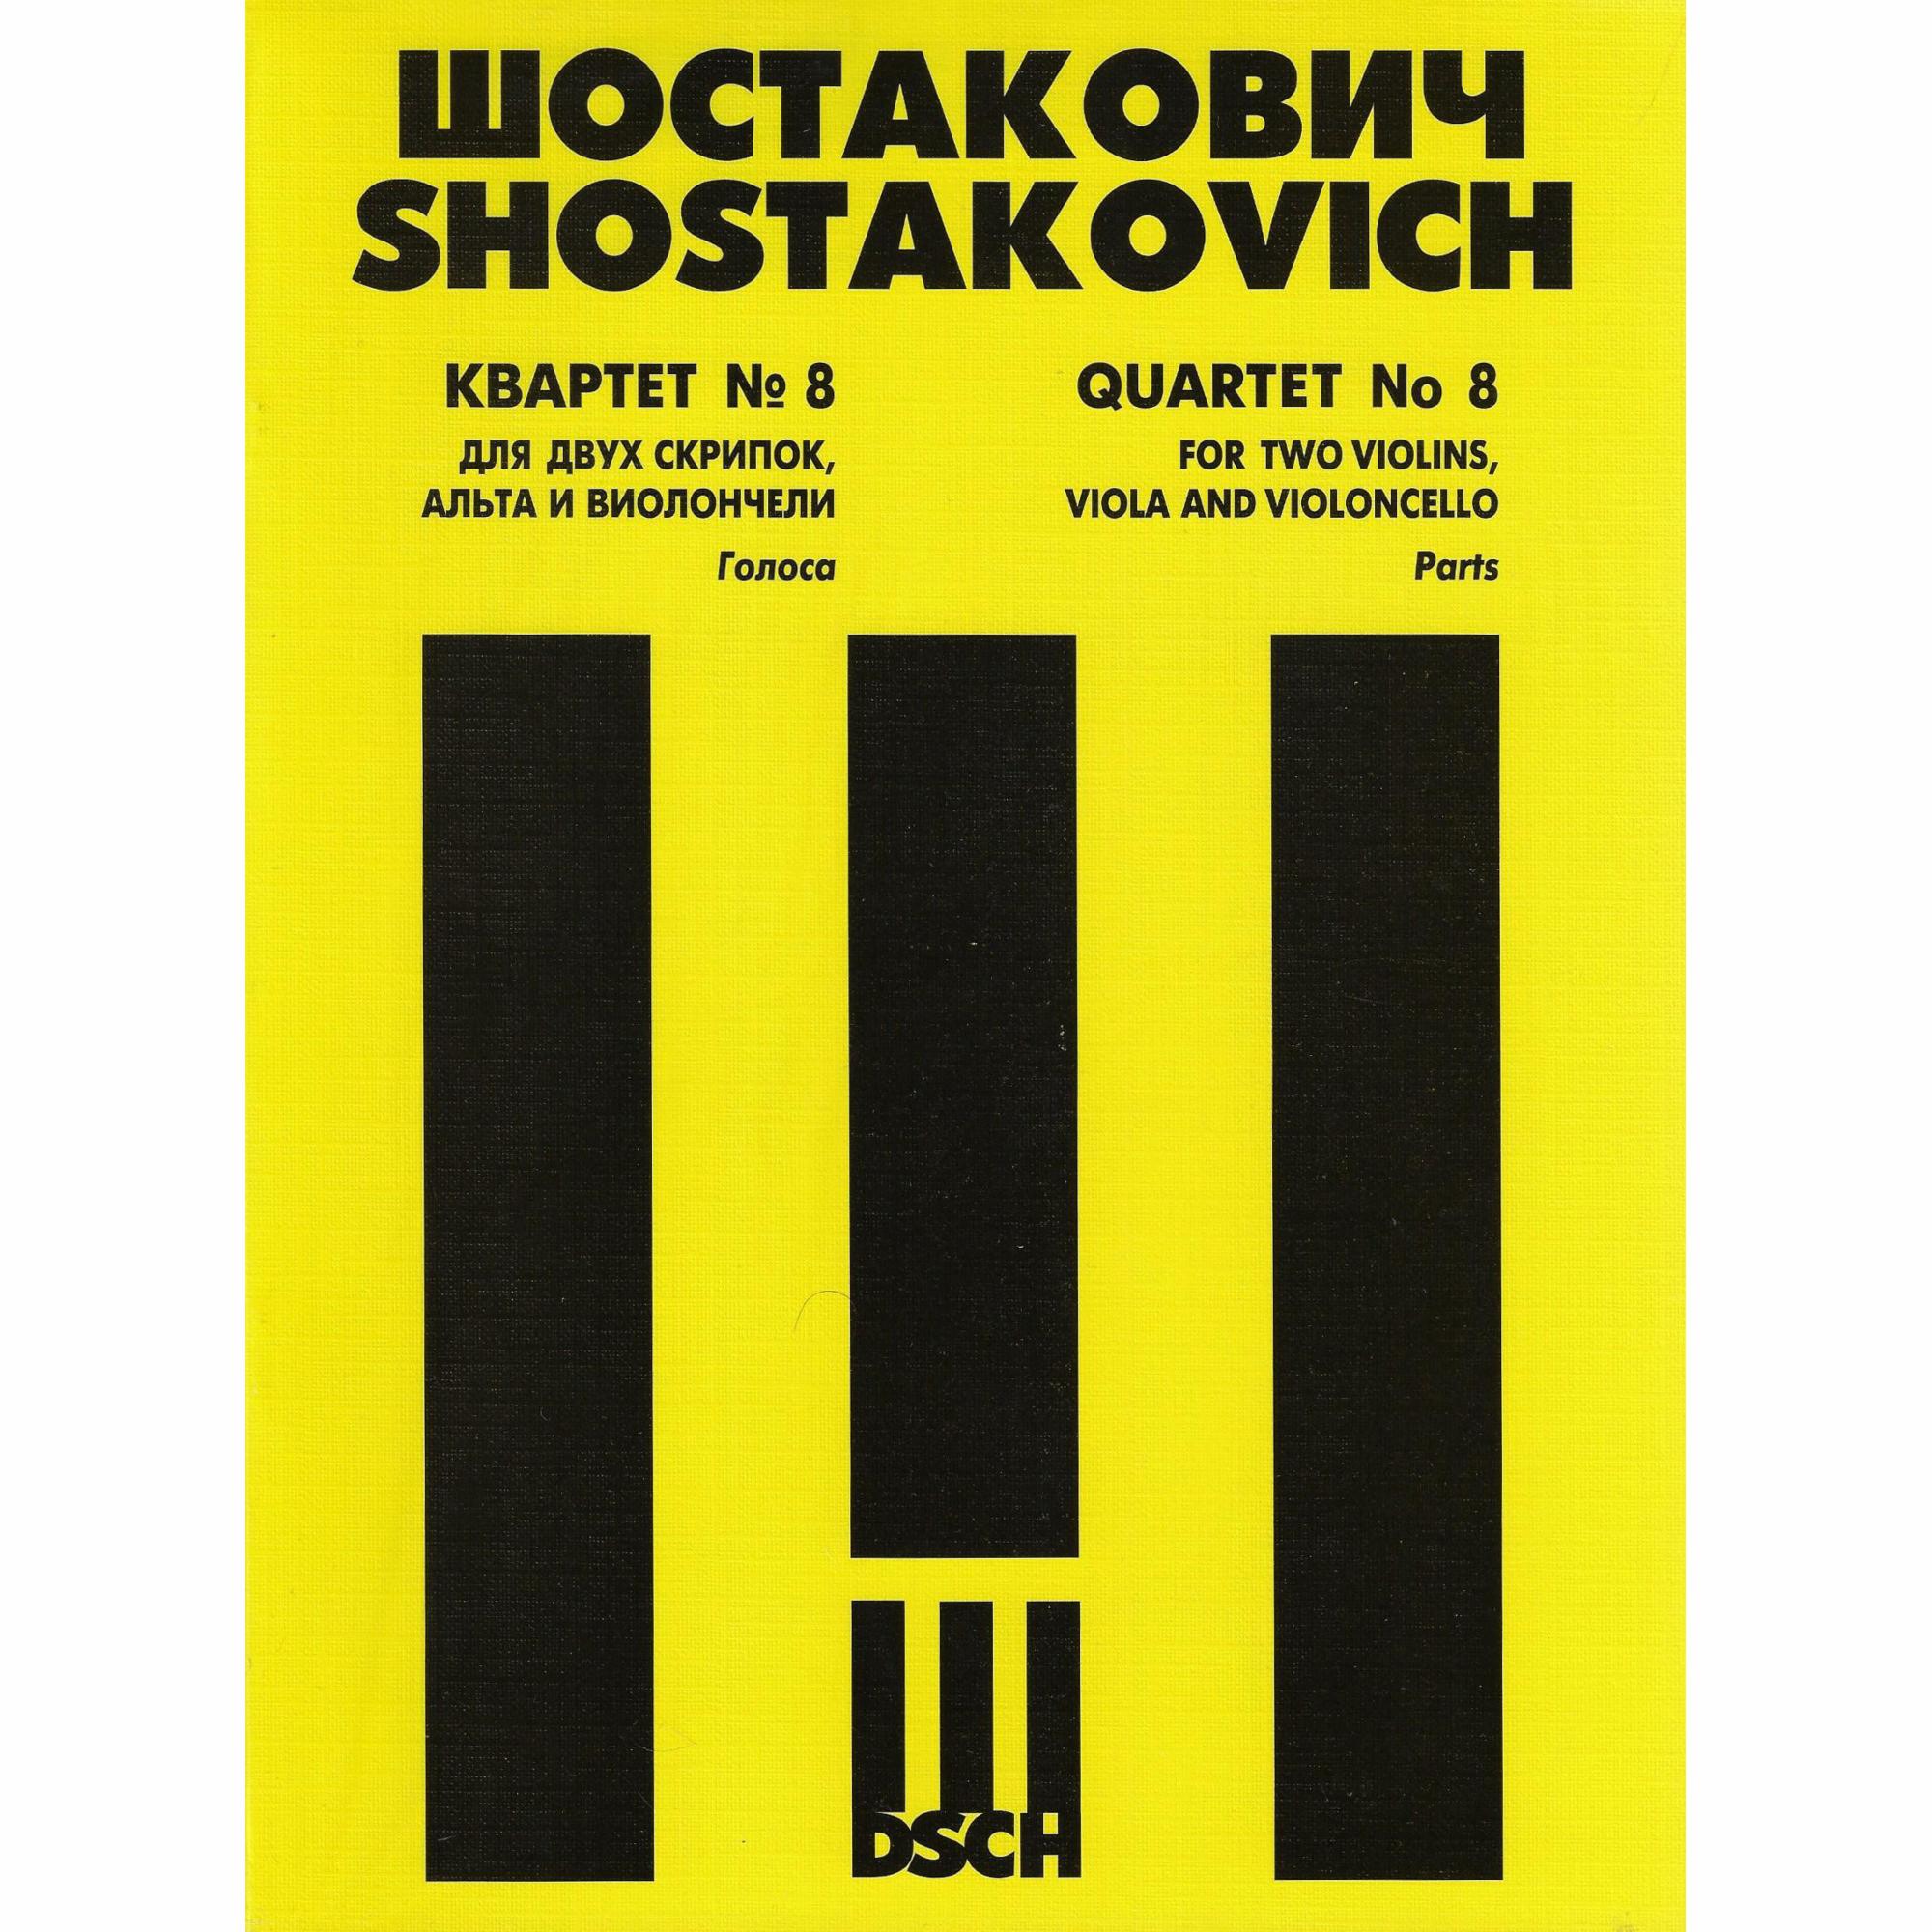 Shostakovich -- String Quartet No. 8